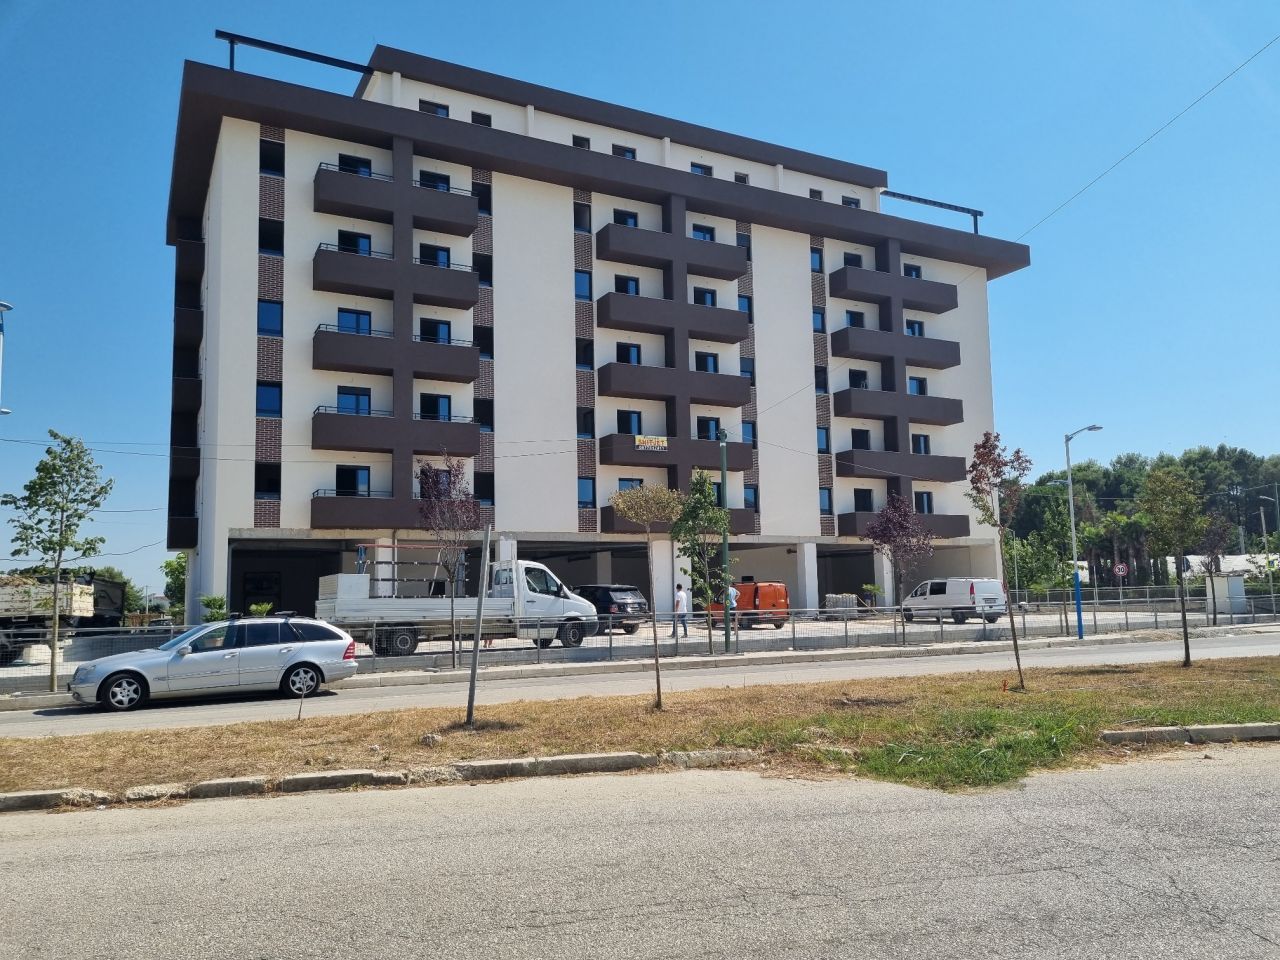 Продается квартира в Мали Робит Голем Дуррес Албания, расположенная в тихом районе, рядом с пляжем